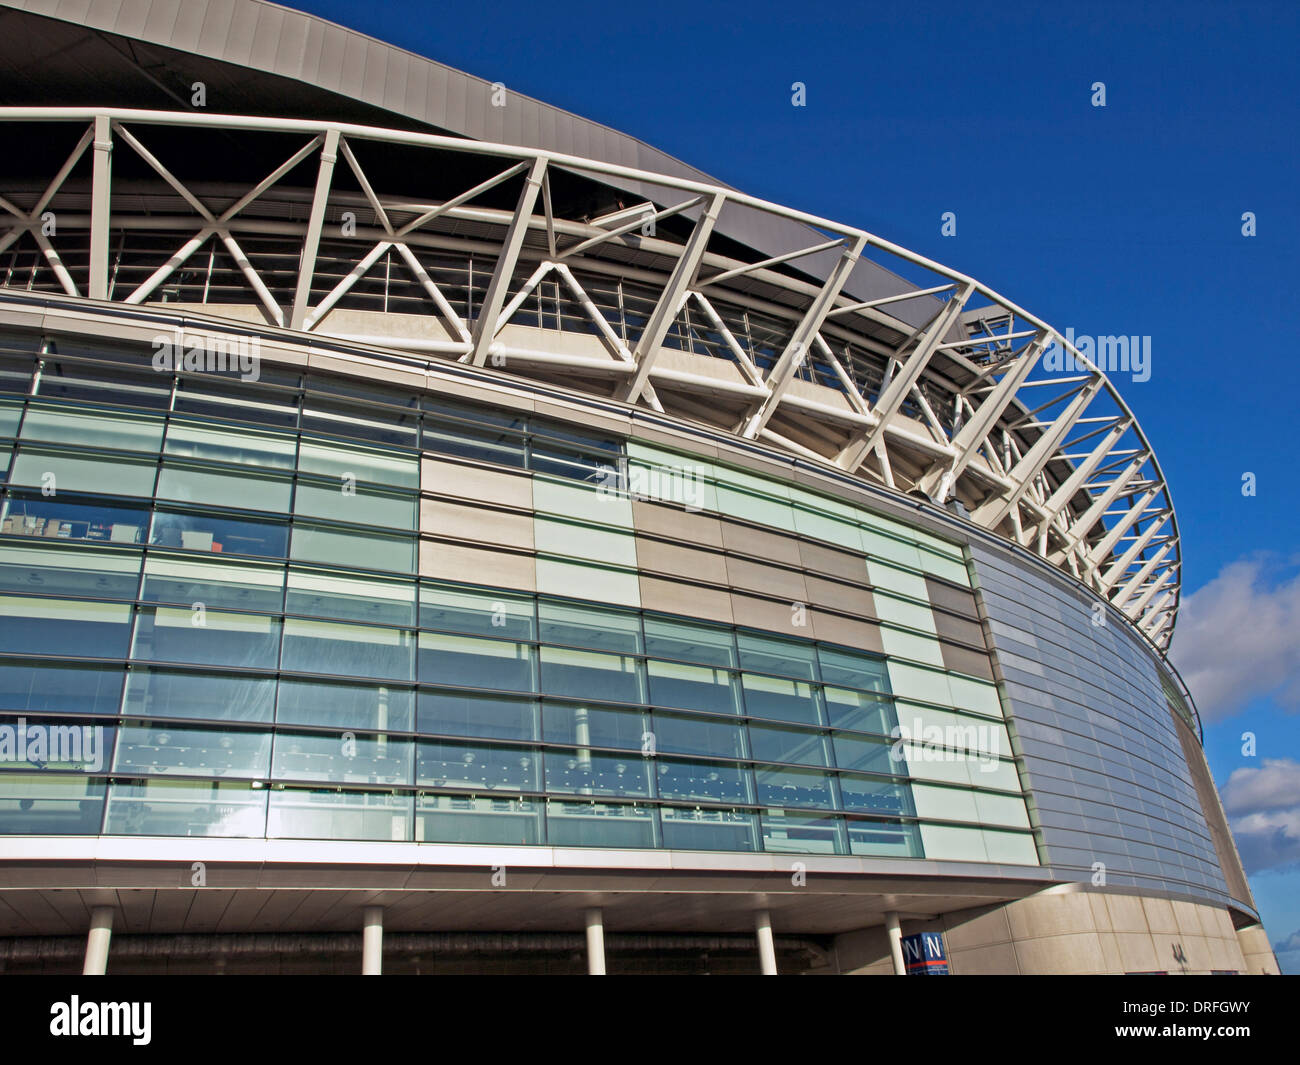 Dettaglio dallo stadio di Wembley, London Borough of Brent, London, England, Regno Unito Foto Stock